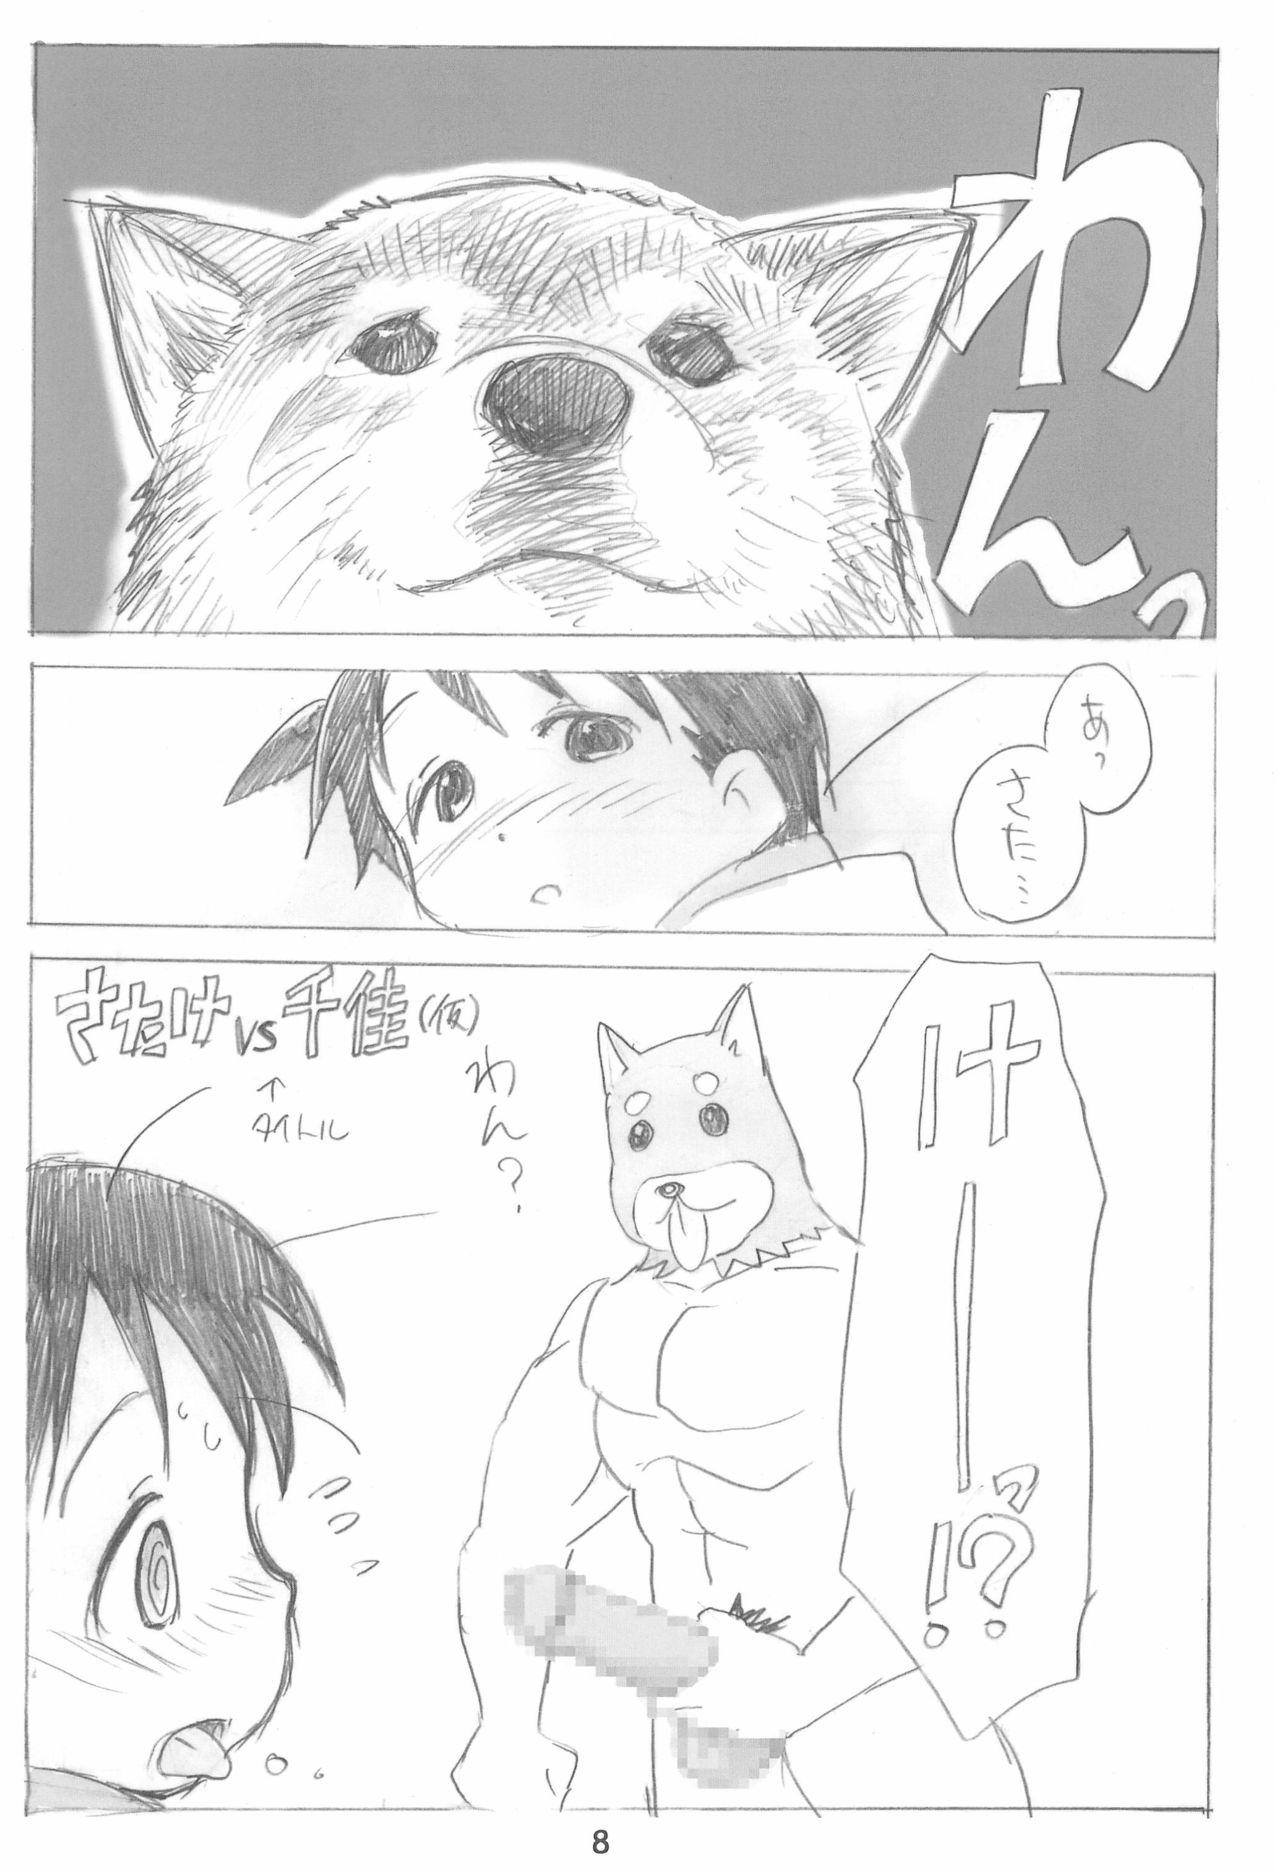 Morrita EroChika Seven to ChikaGura! no Matome-bon - Ichigo mashimaro Big Dildo - Page 8